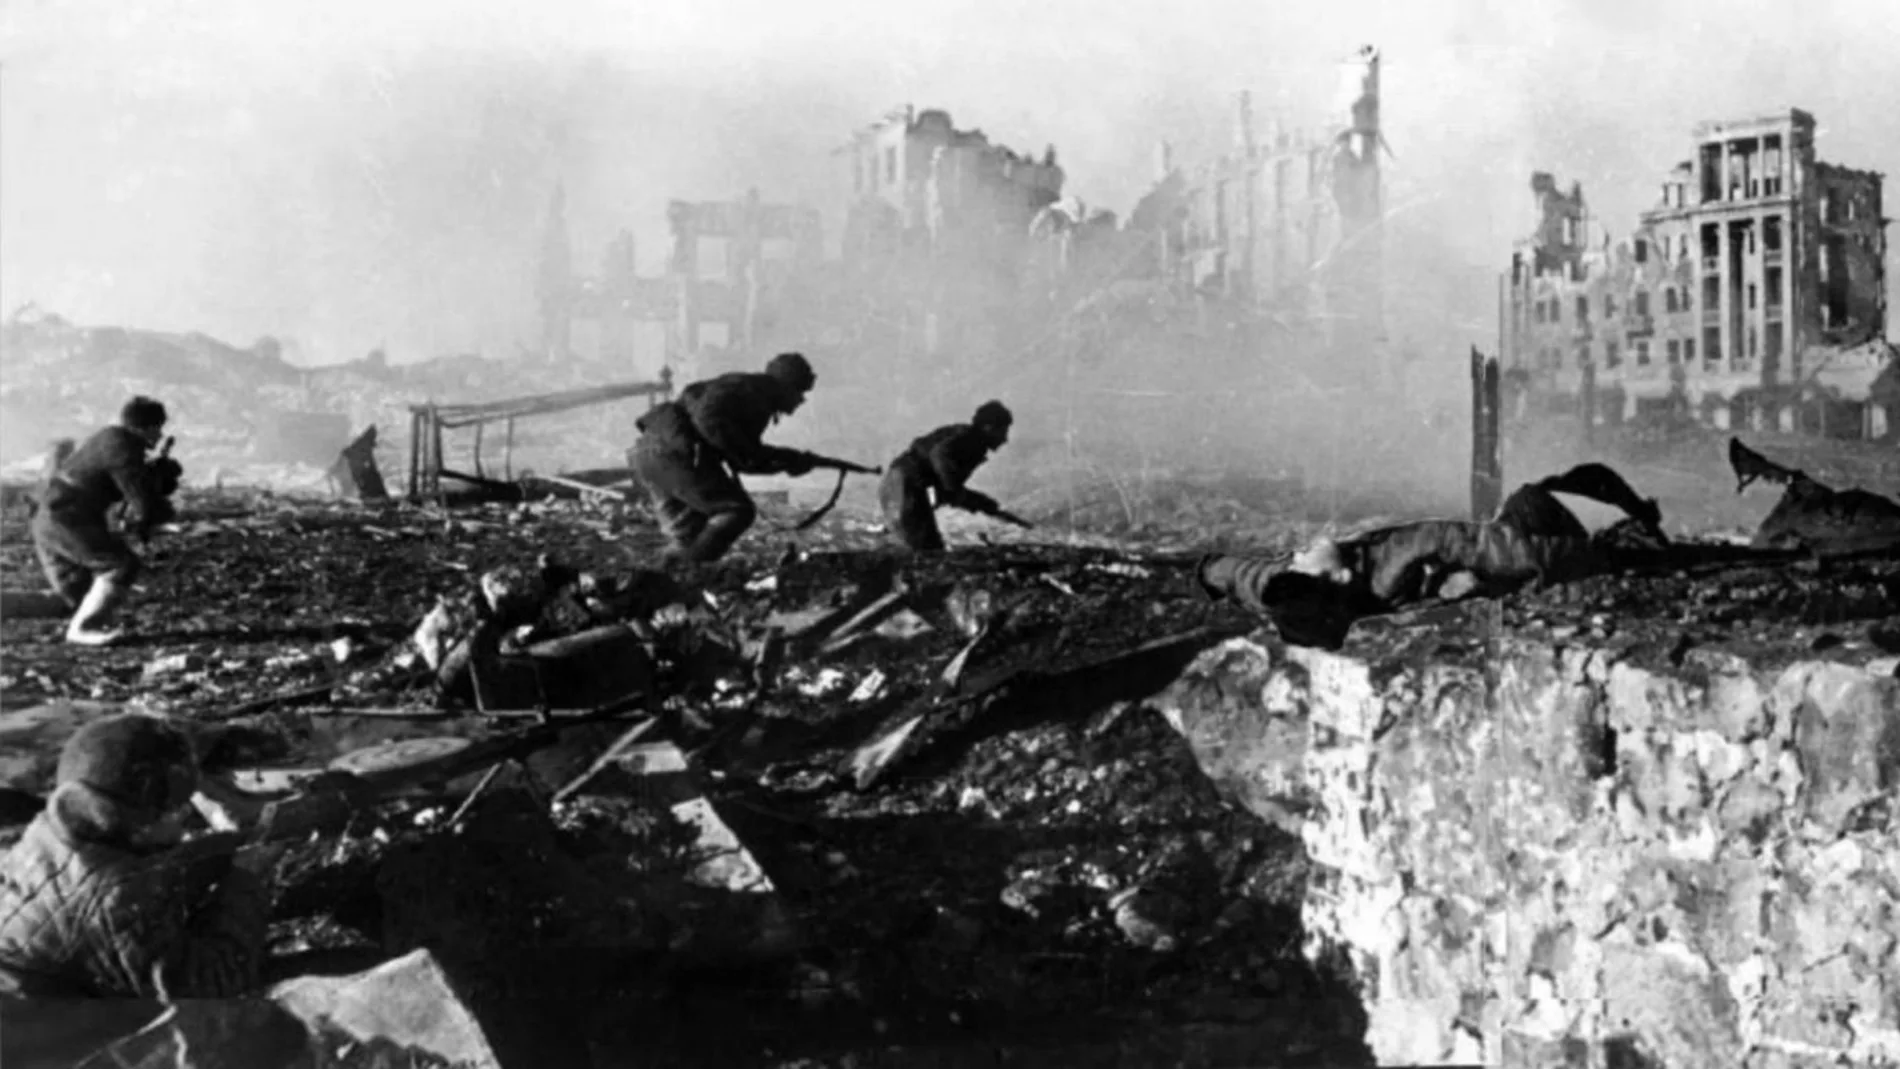 Ofensiva de los soldados rusos en enero de 1943 en Stalingrado. Destaca al fondo el edificio de los ferroviarios, que se hizo célebre durante la batalla